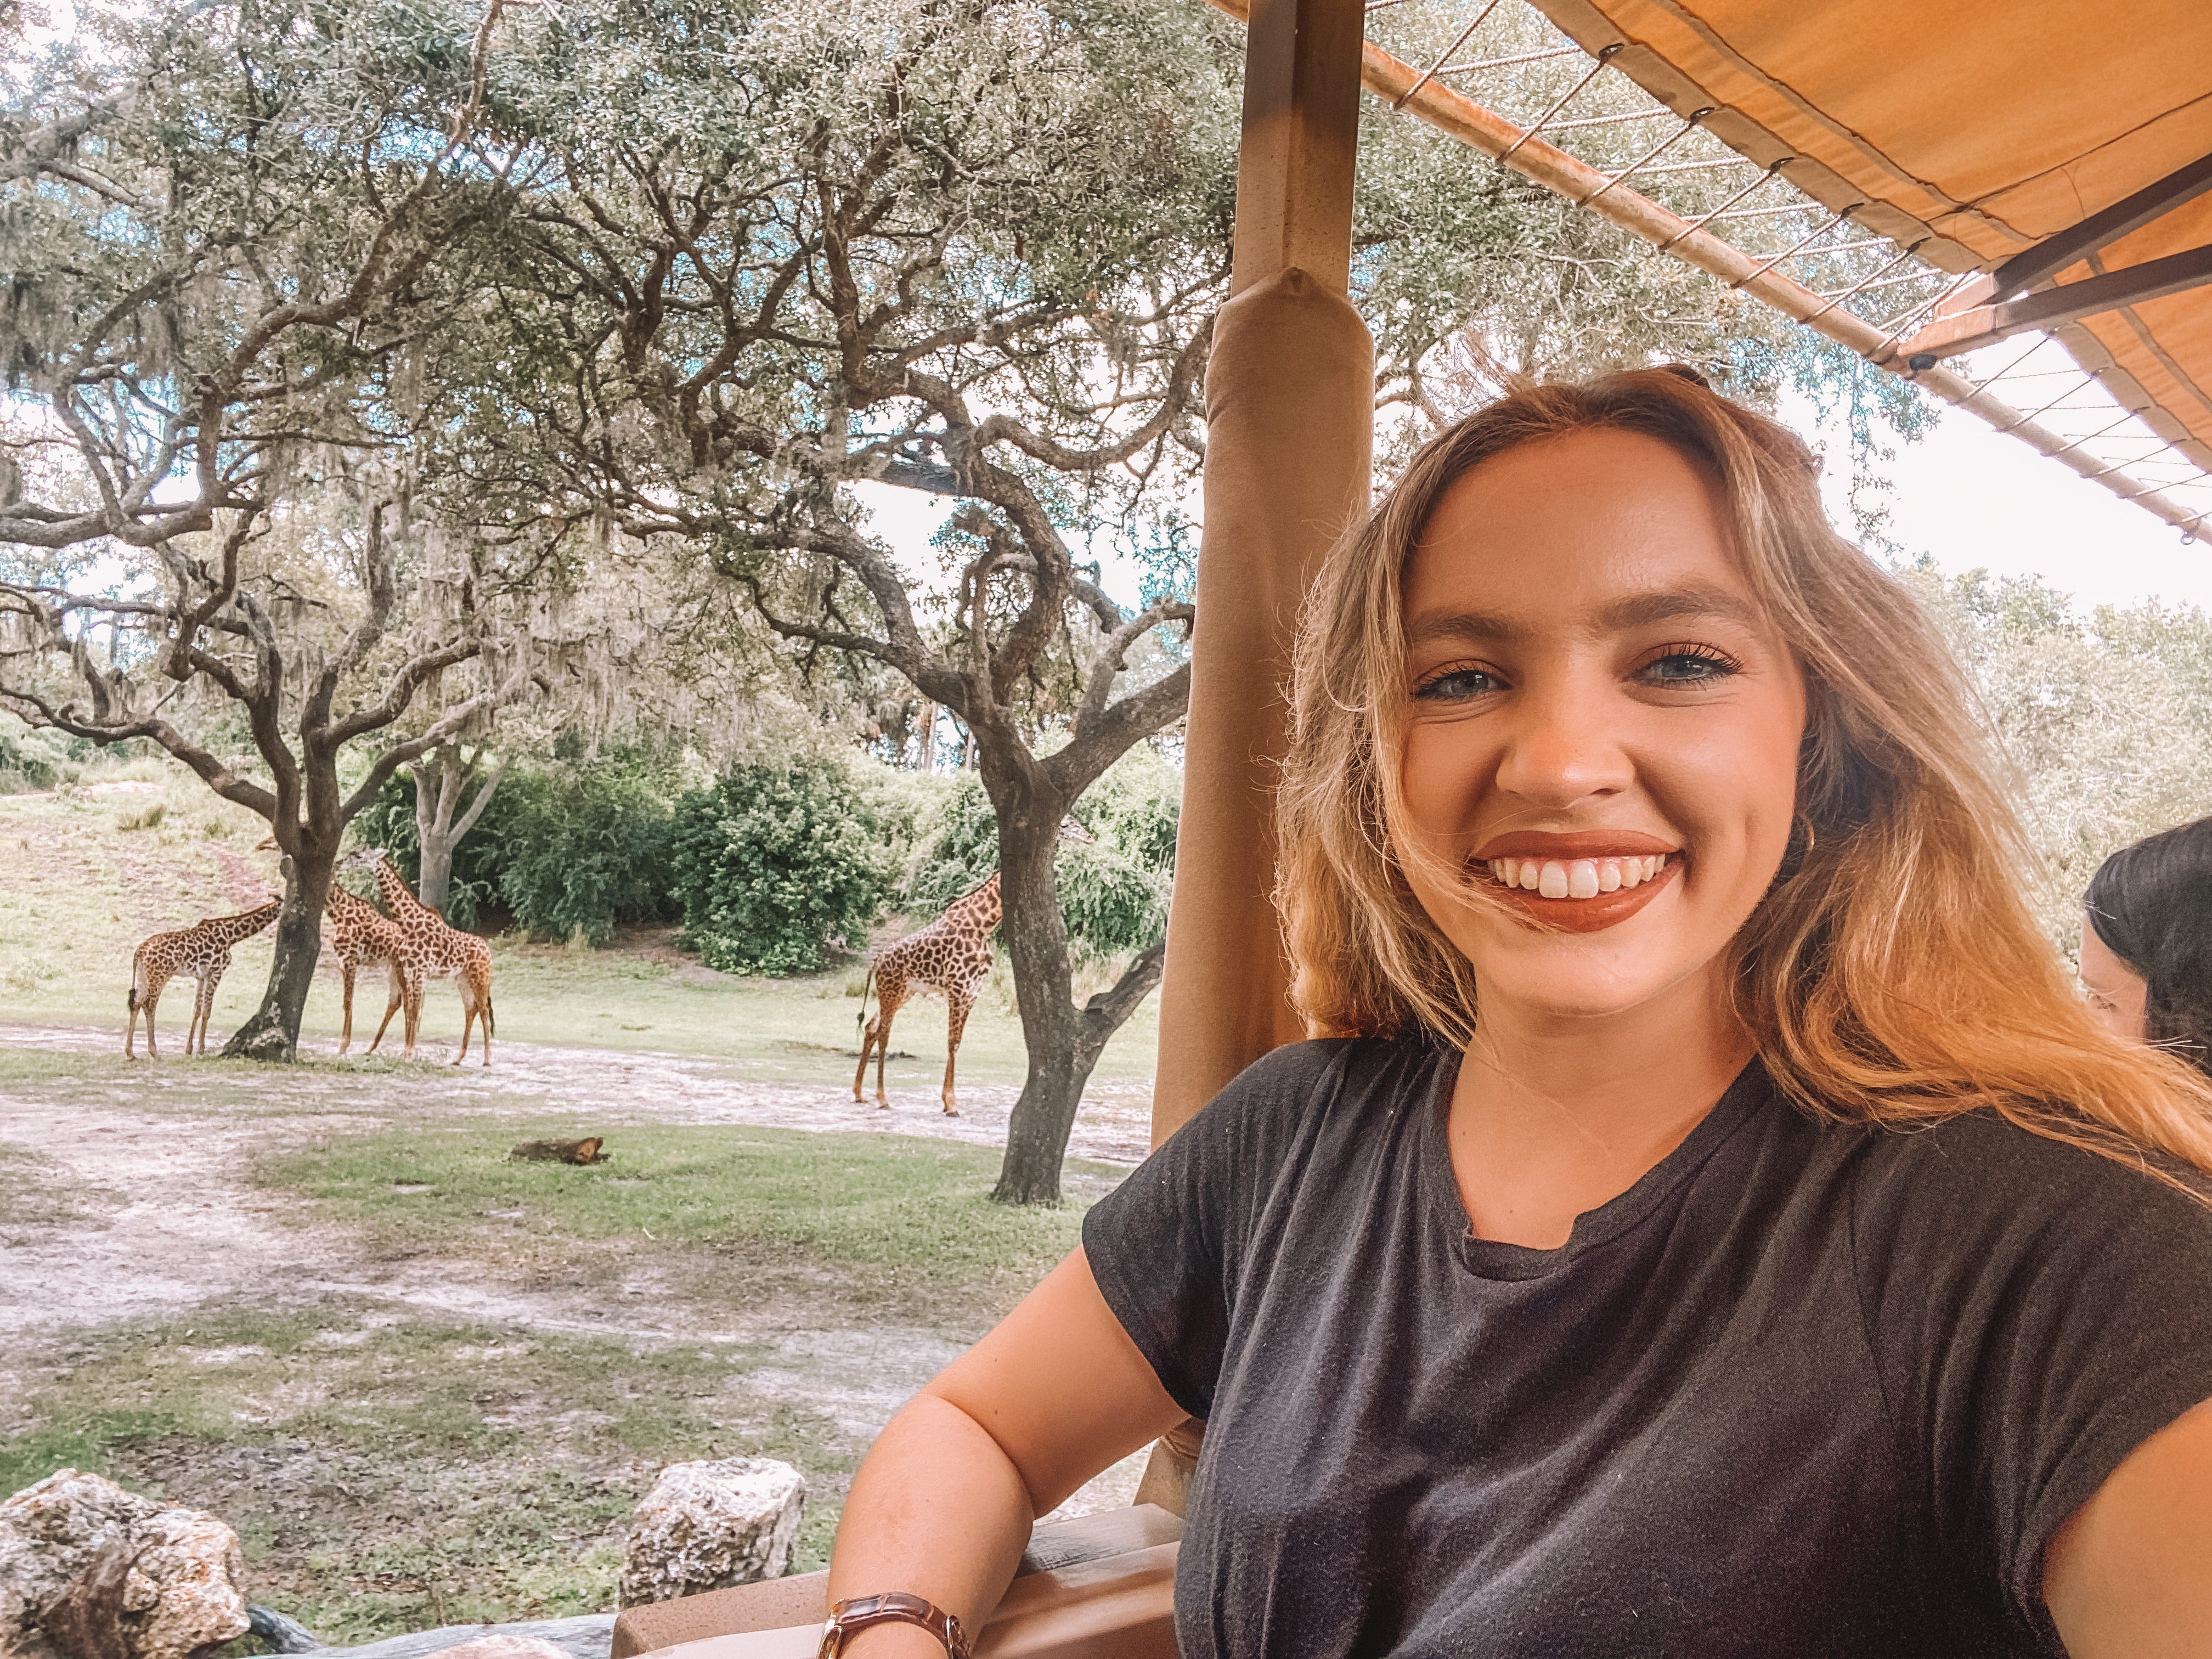 Kayleigh-Preis auf Kilimandscharo-Safari im Tierreich in Disney World